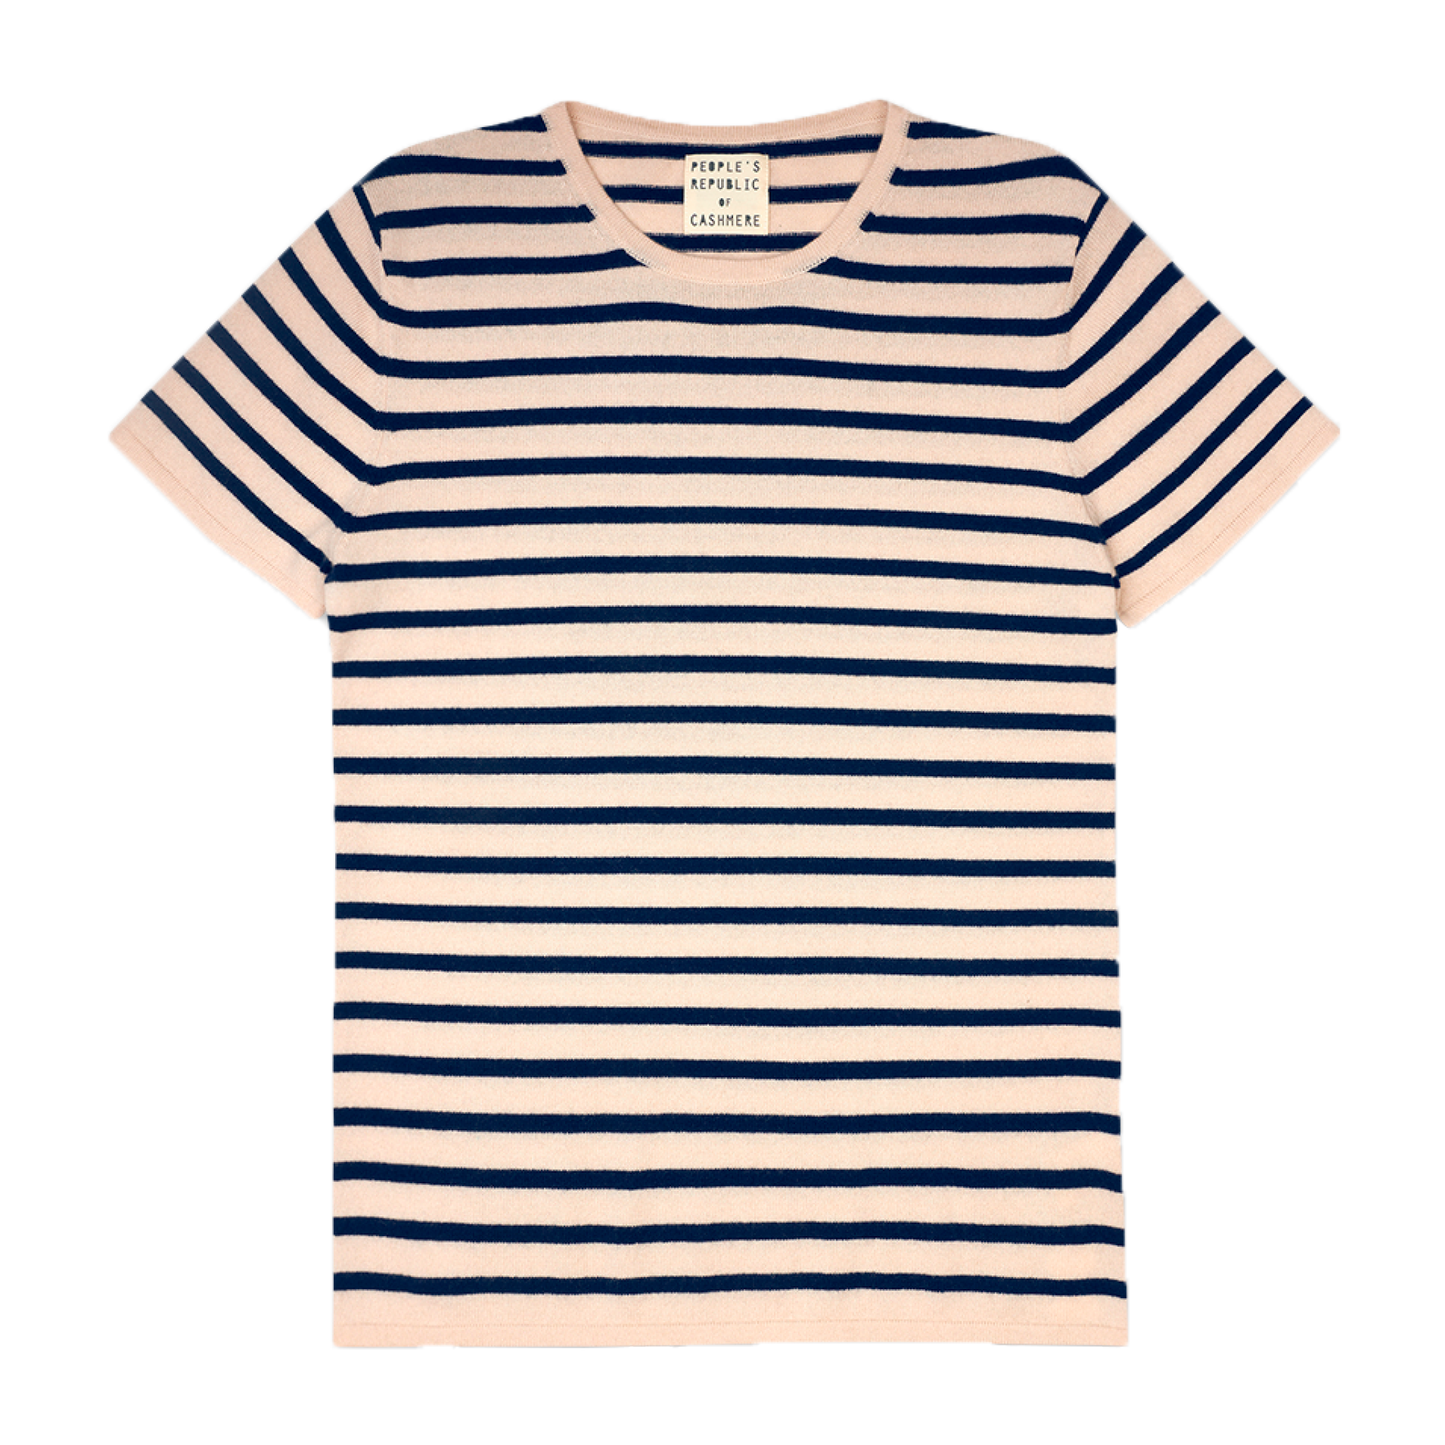 Original Cashmere T-shirt, Striped Cream/Navy